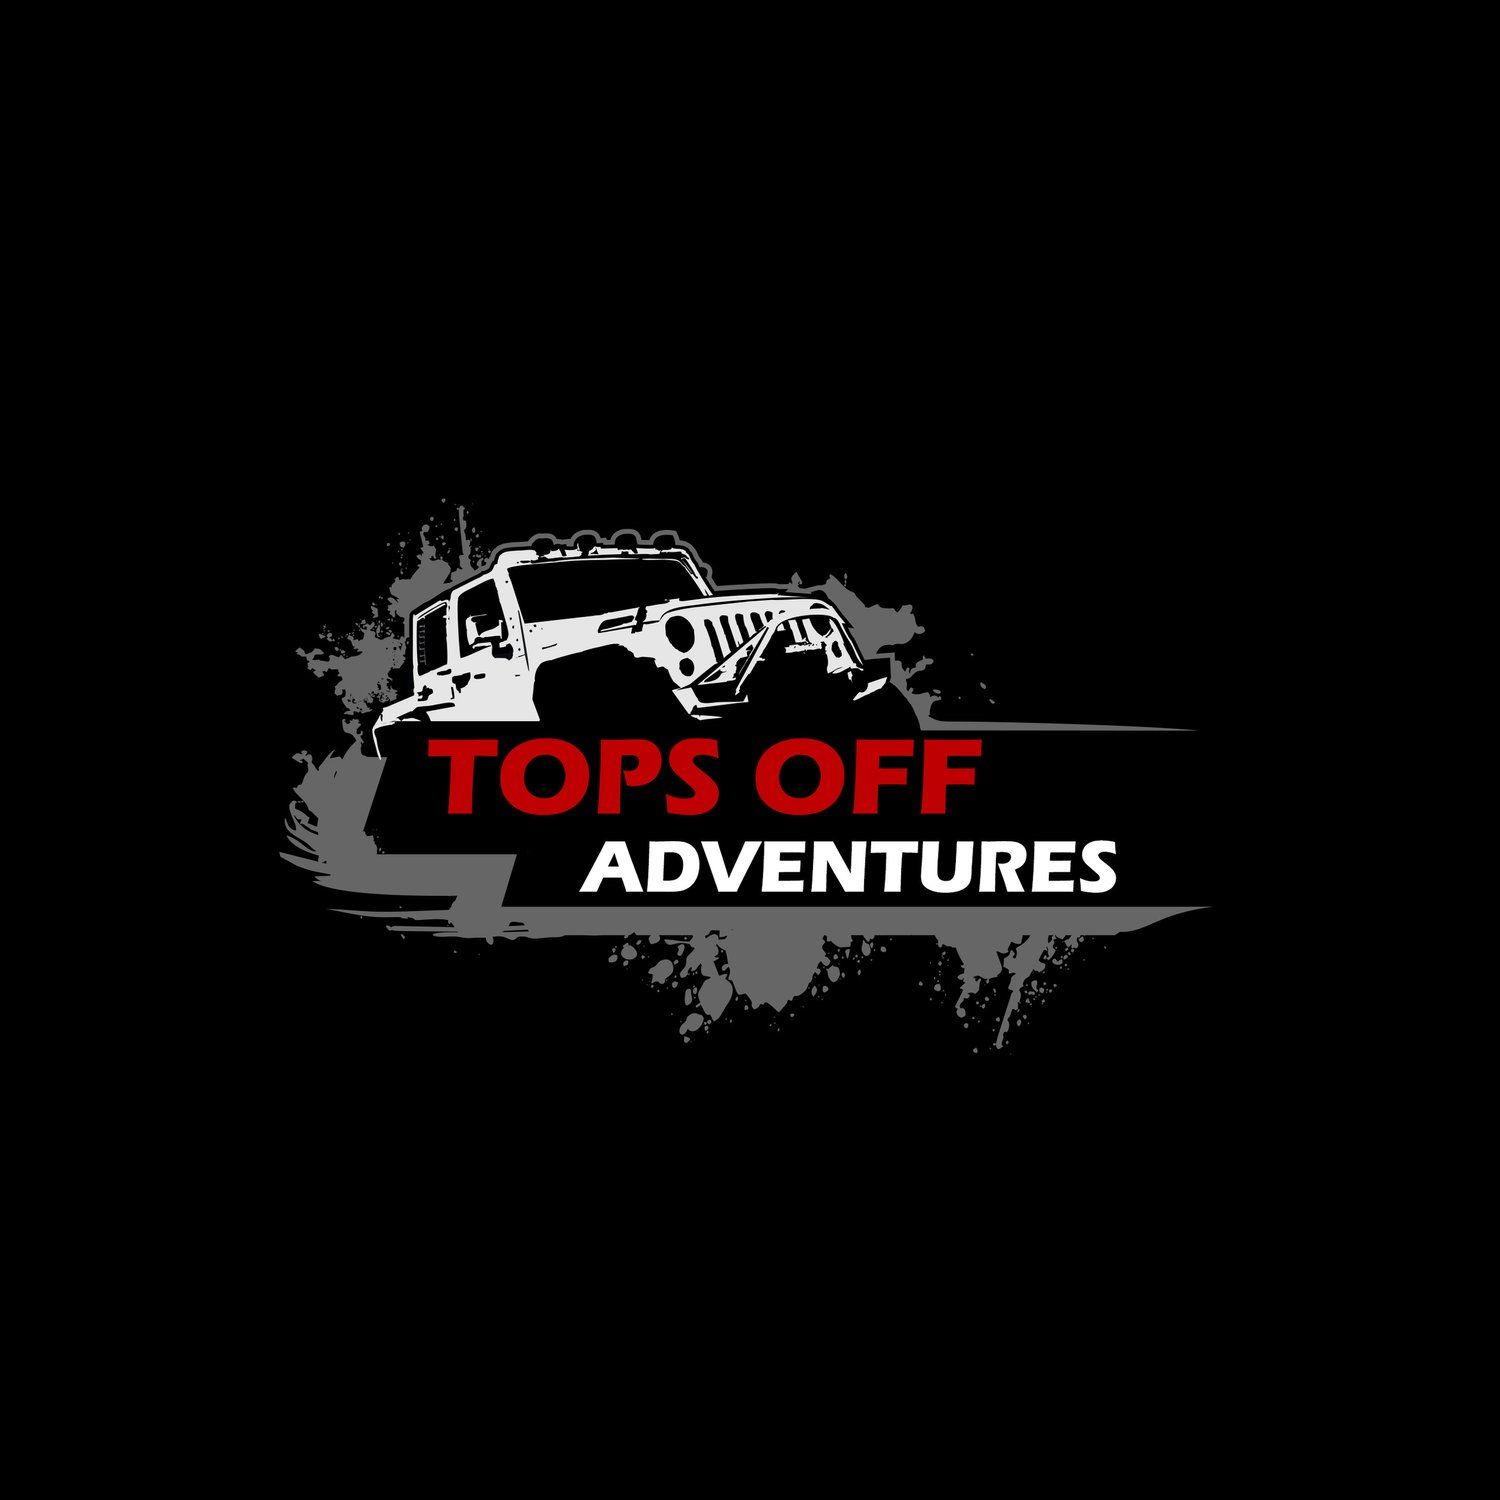 Tops Off Adventures